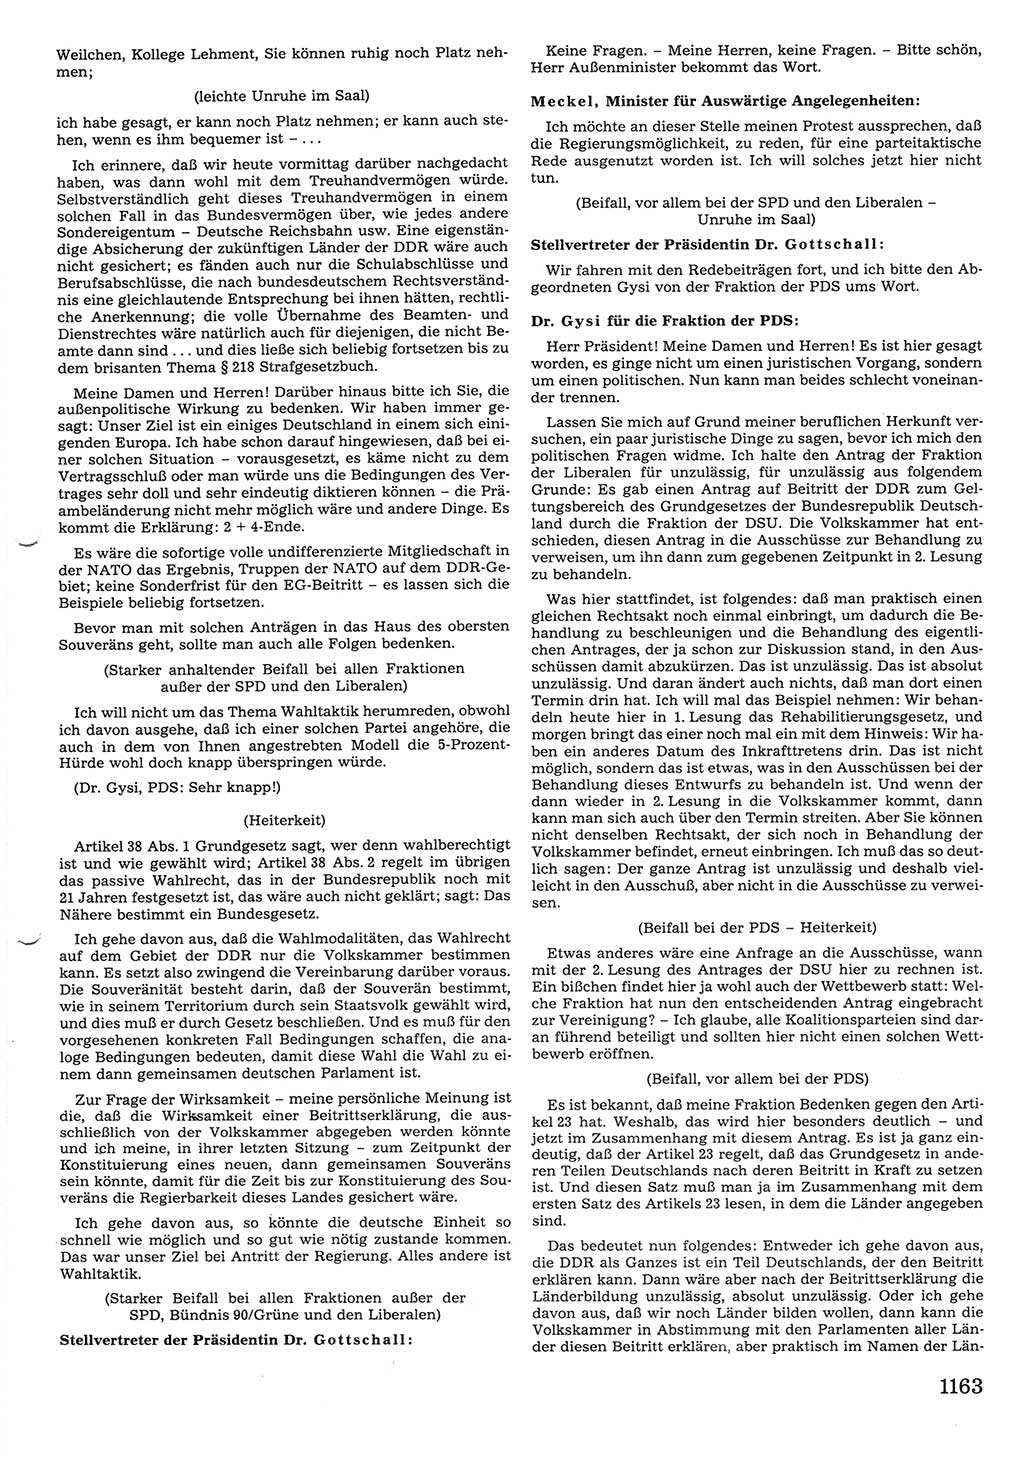 Tagungen der Volkskammer (VK) der Deutschen Demokratischen Republik (DDR), 10. Wahlperiode 1990, Seite 1163 (VK. DDR 10. WP. 1990, Prot. Tg. 1-38, 5.4.-2.10.1990, S. 1163)